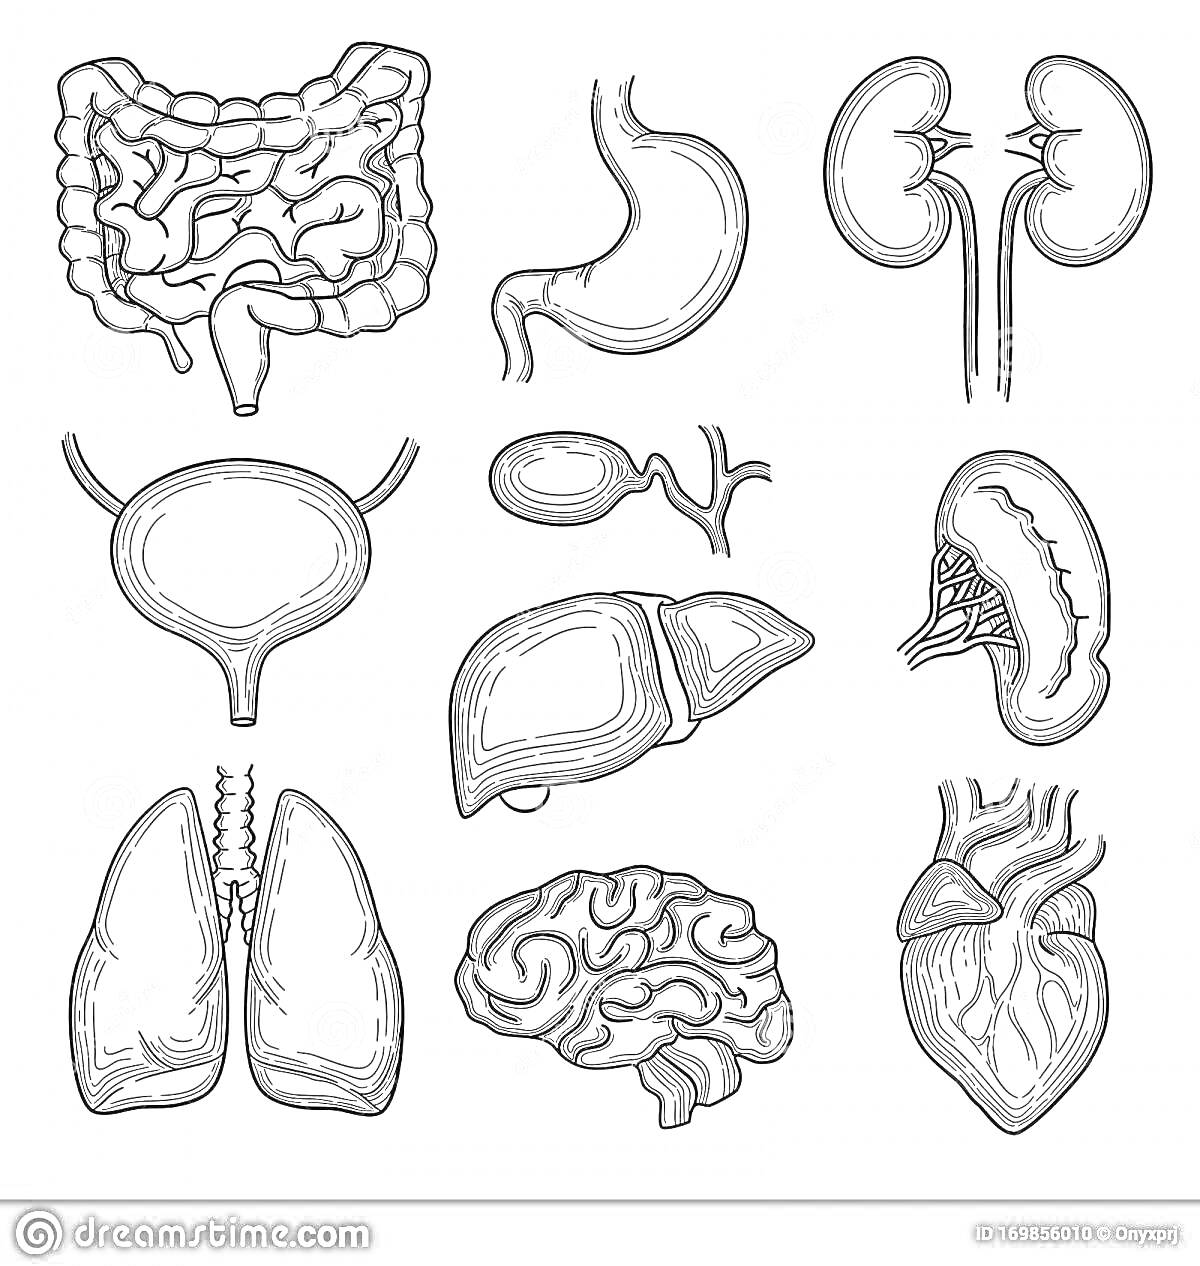 Внутренние органы человека: кишечник, желудок, почки, мочевой пузырь, желчный пузырь, печень, селезенка, легкие, мозг, сердце